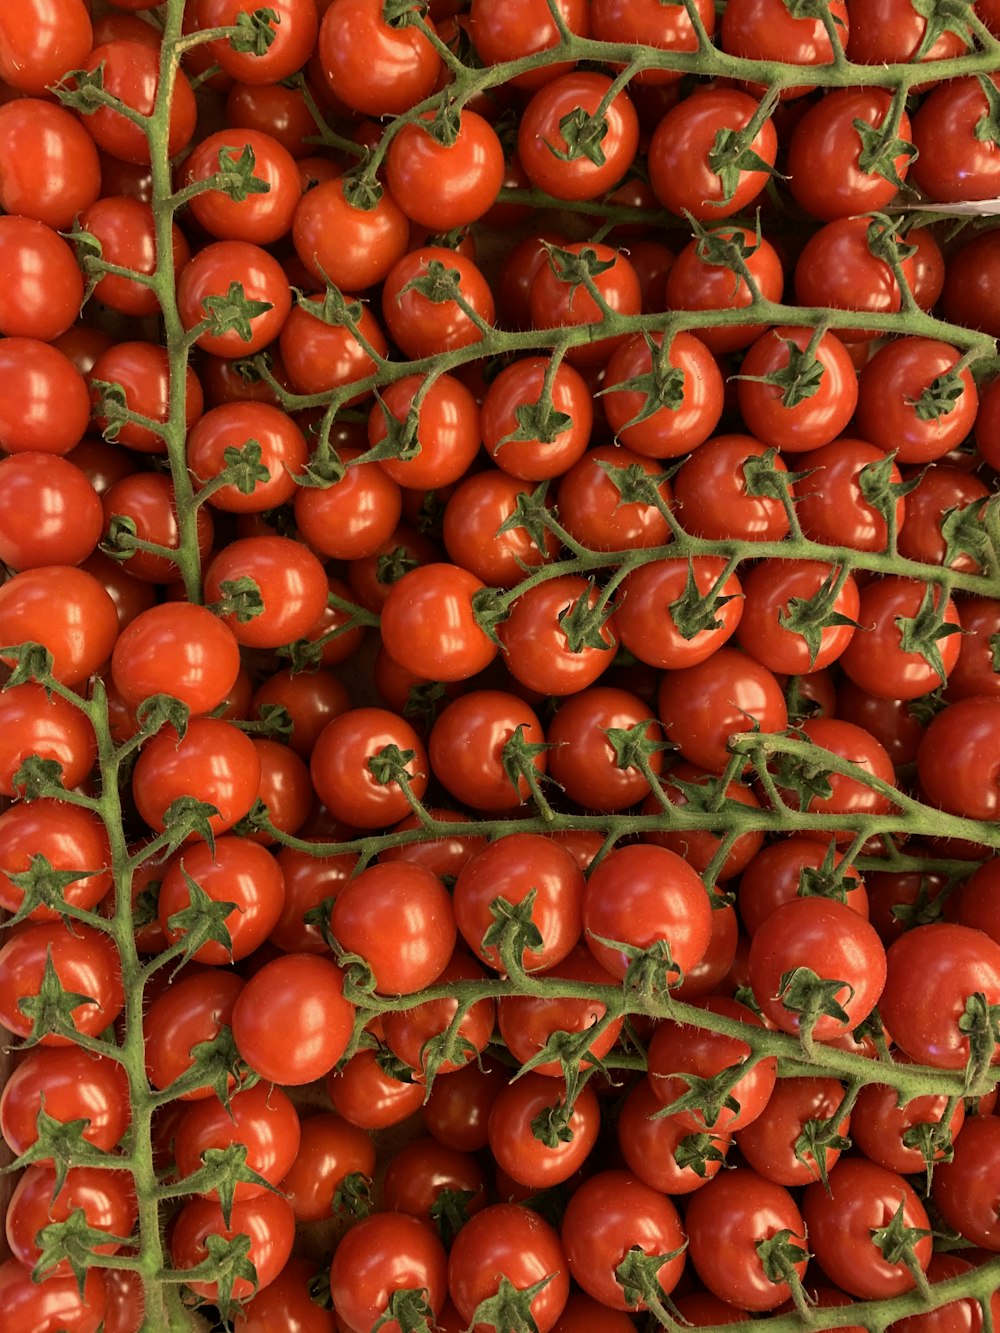 クローズアップ写真の赤いトマト